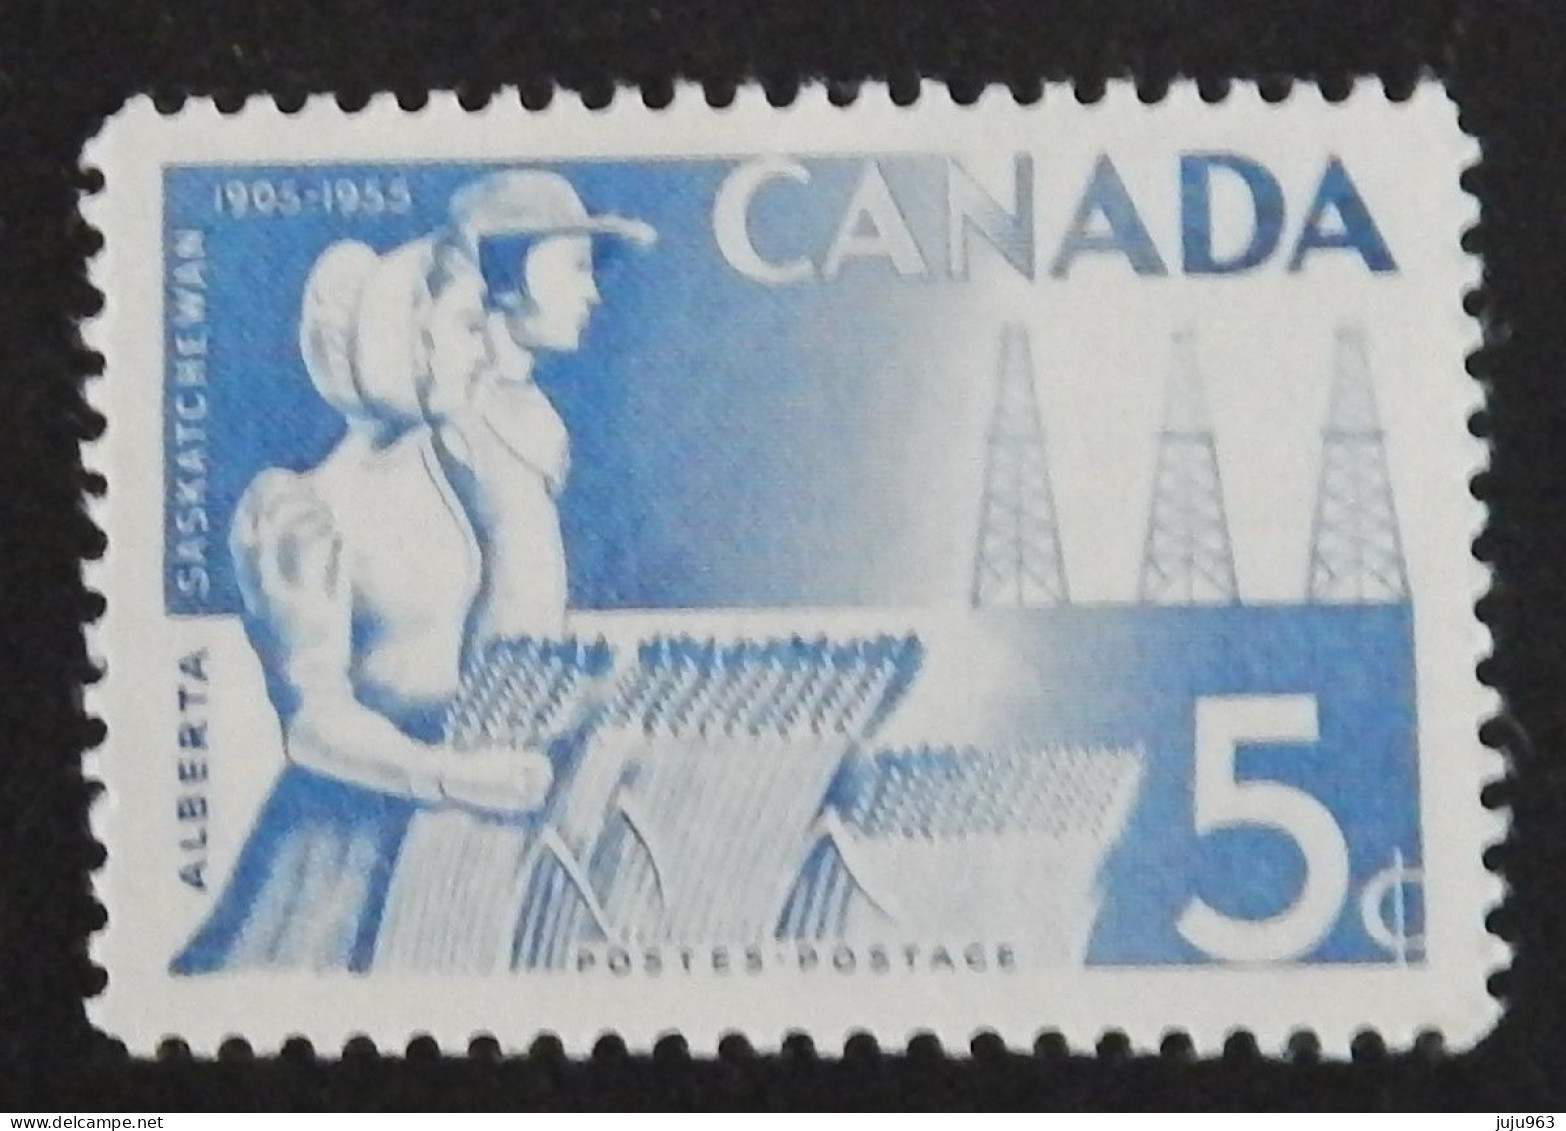 CANADA YT 282 NEUF**MNH  ANNEE 1955 - Ungebraucht